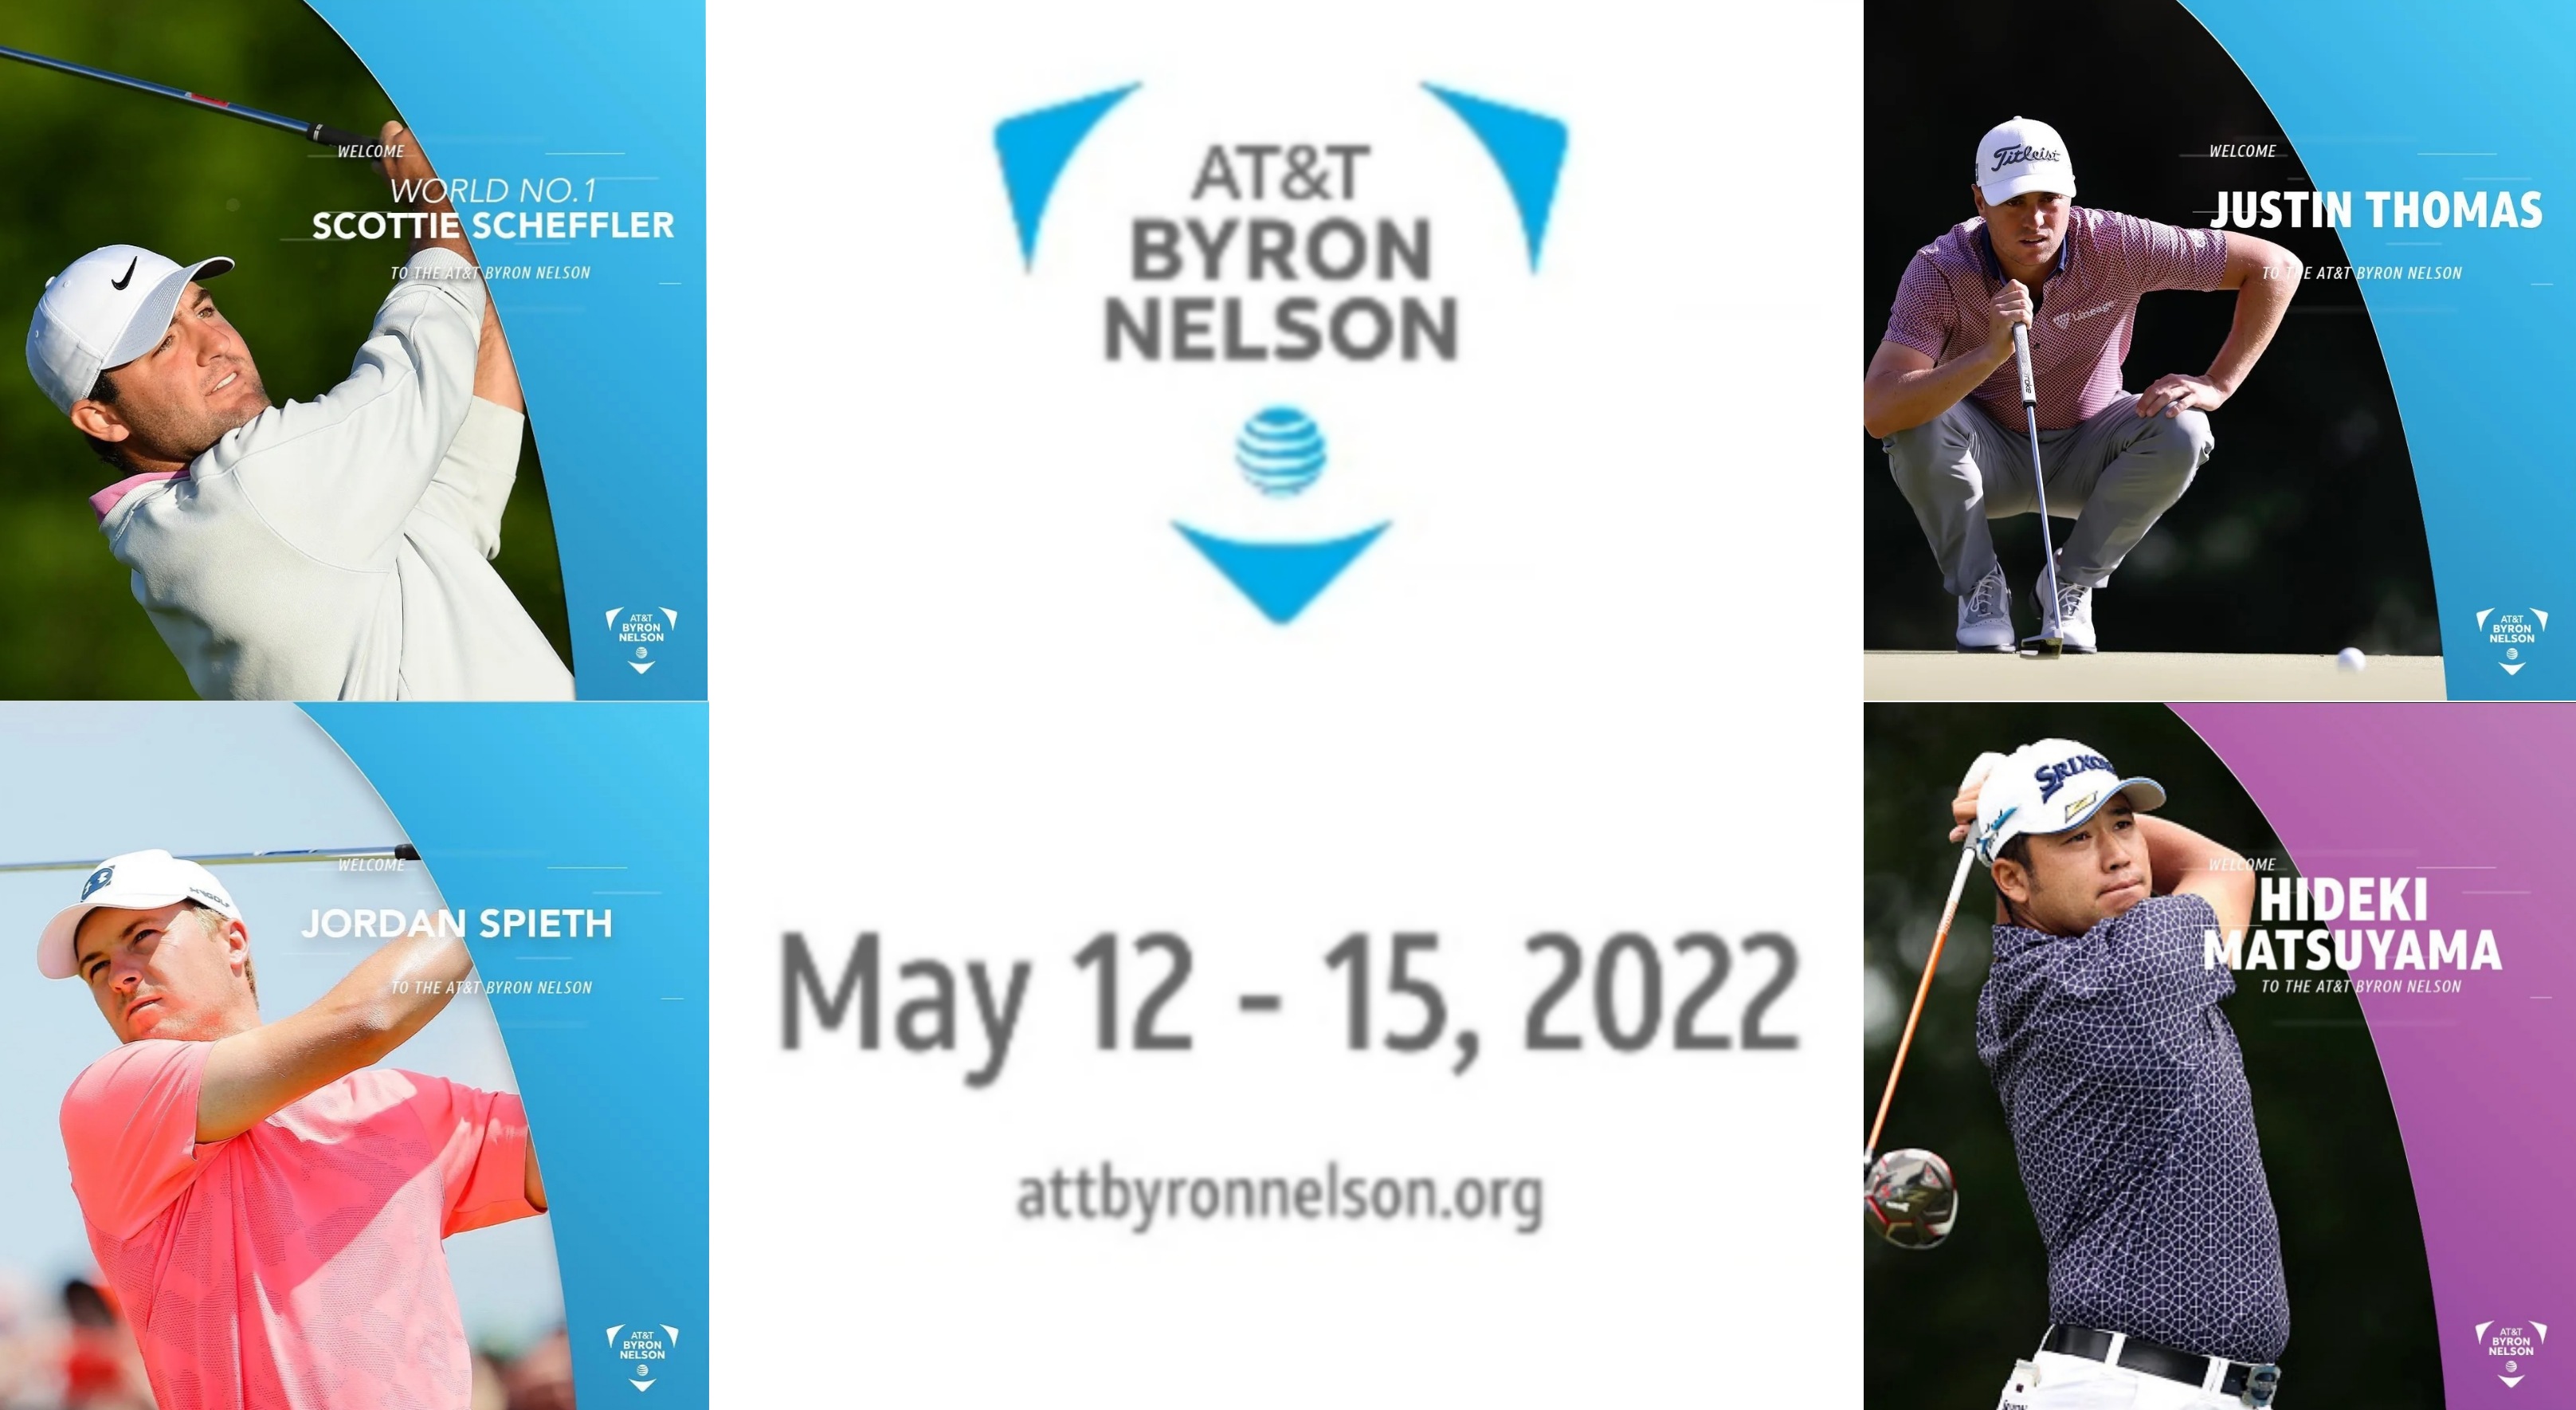 AT&T 바이런 넬슨 제76회 대회가 오는 5월 12일 개막한다